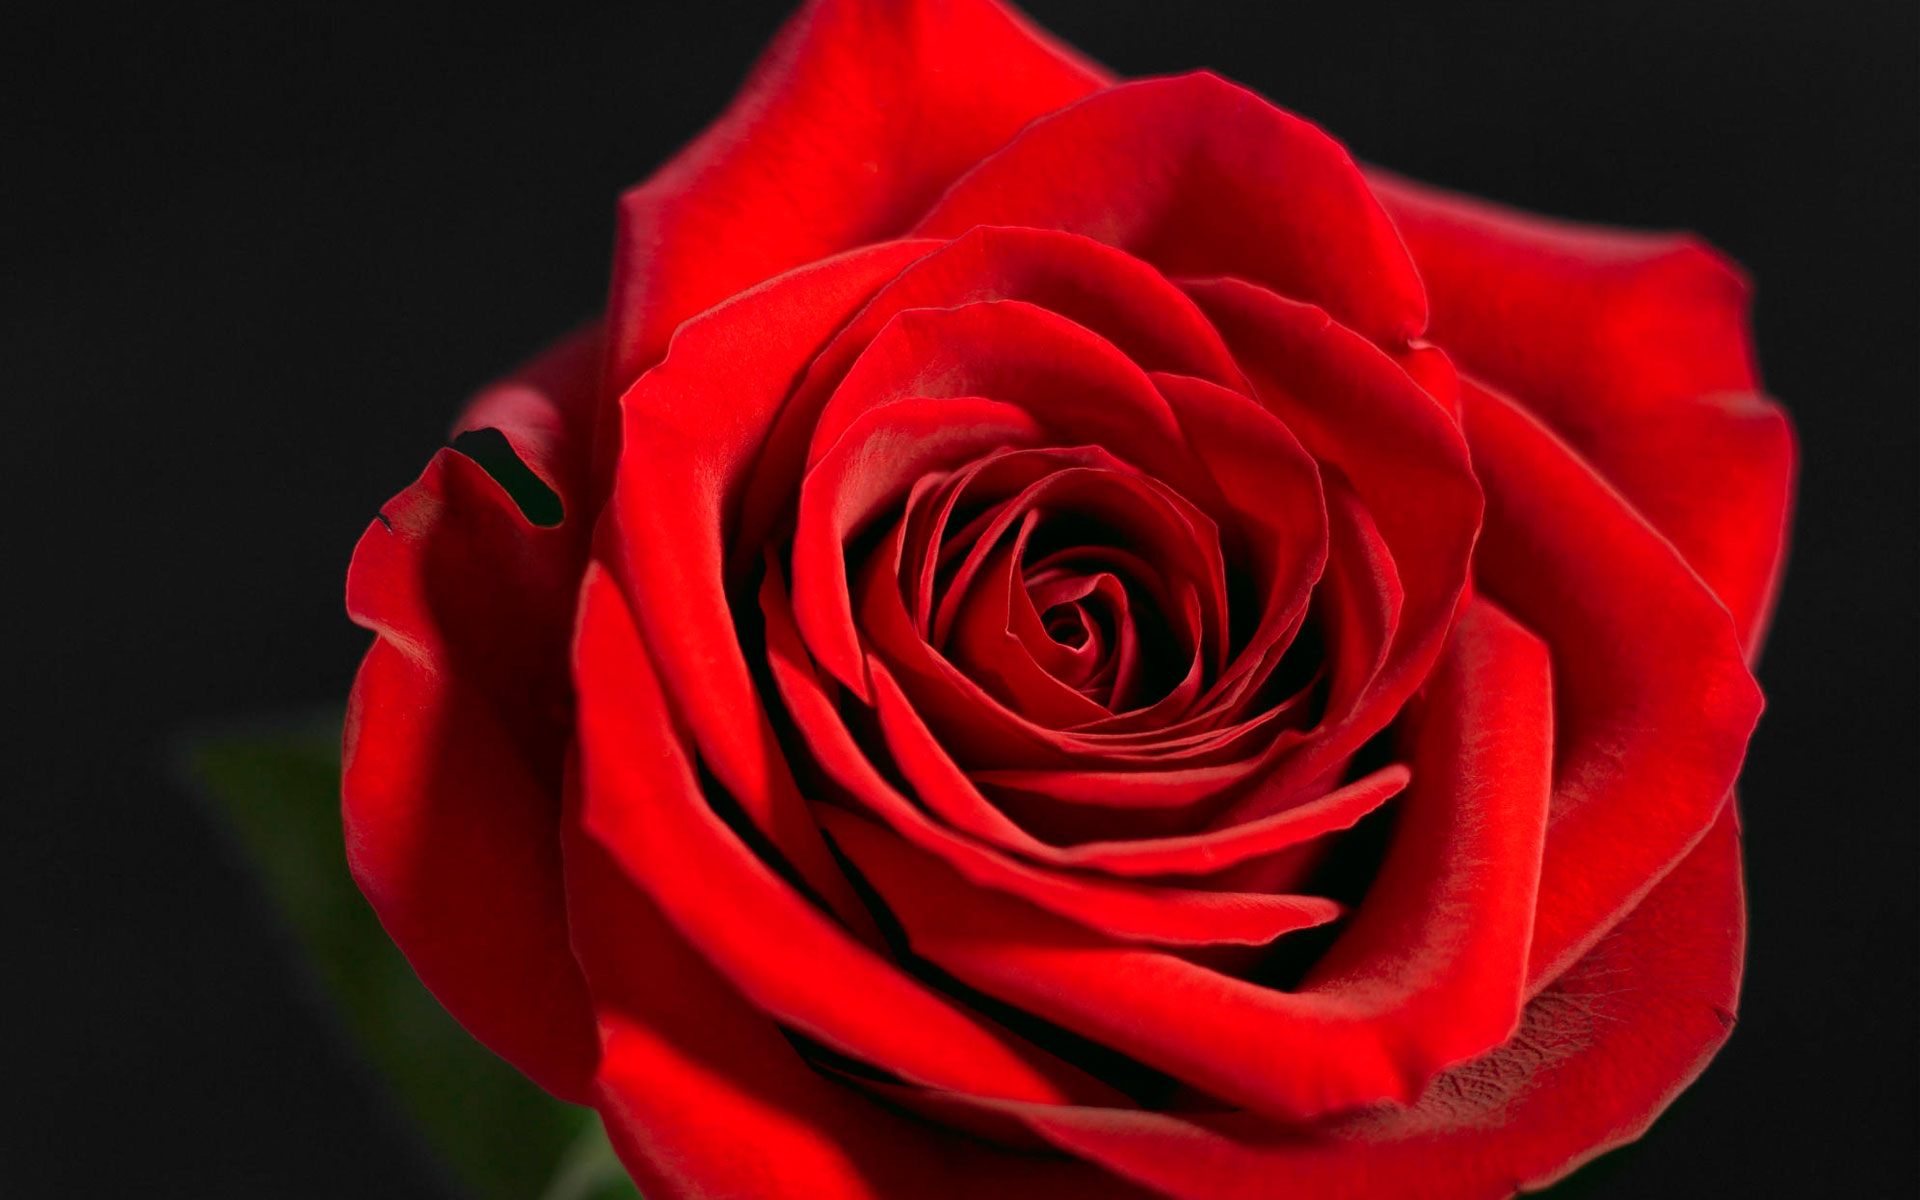 Hình ảnh hoa hồng đỏ rực rỡ xinh đẹp